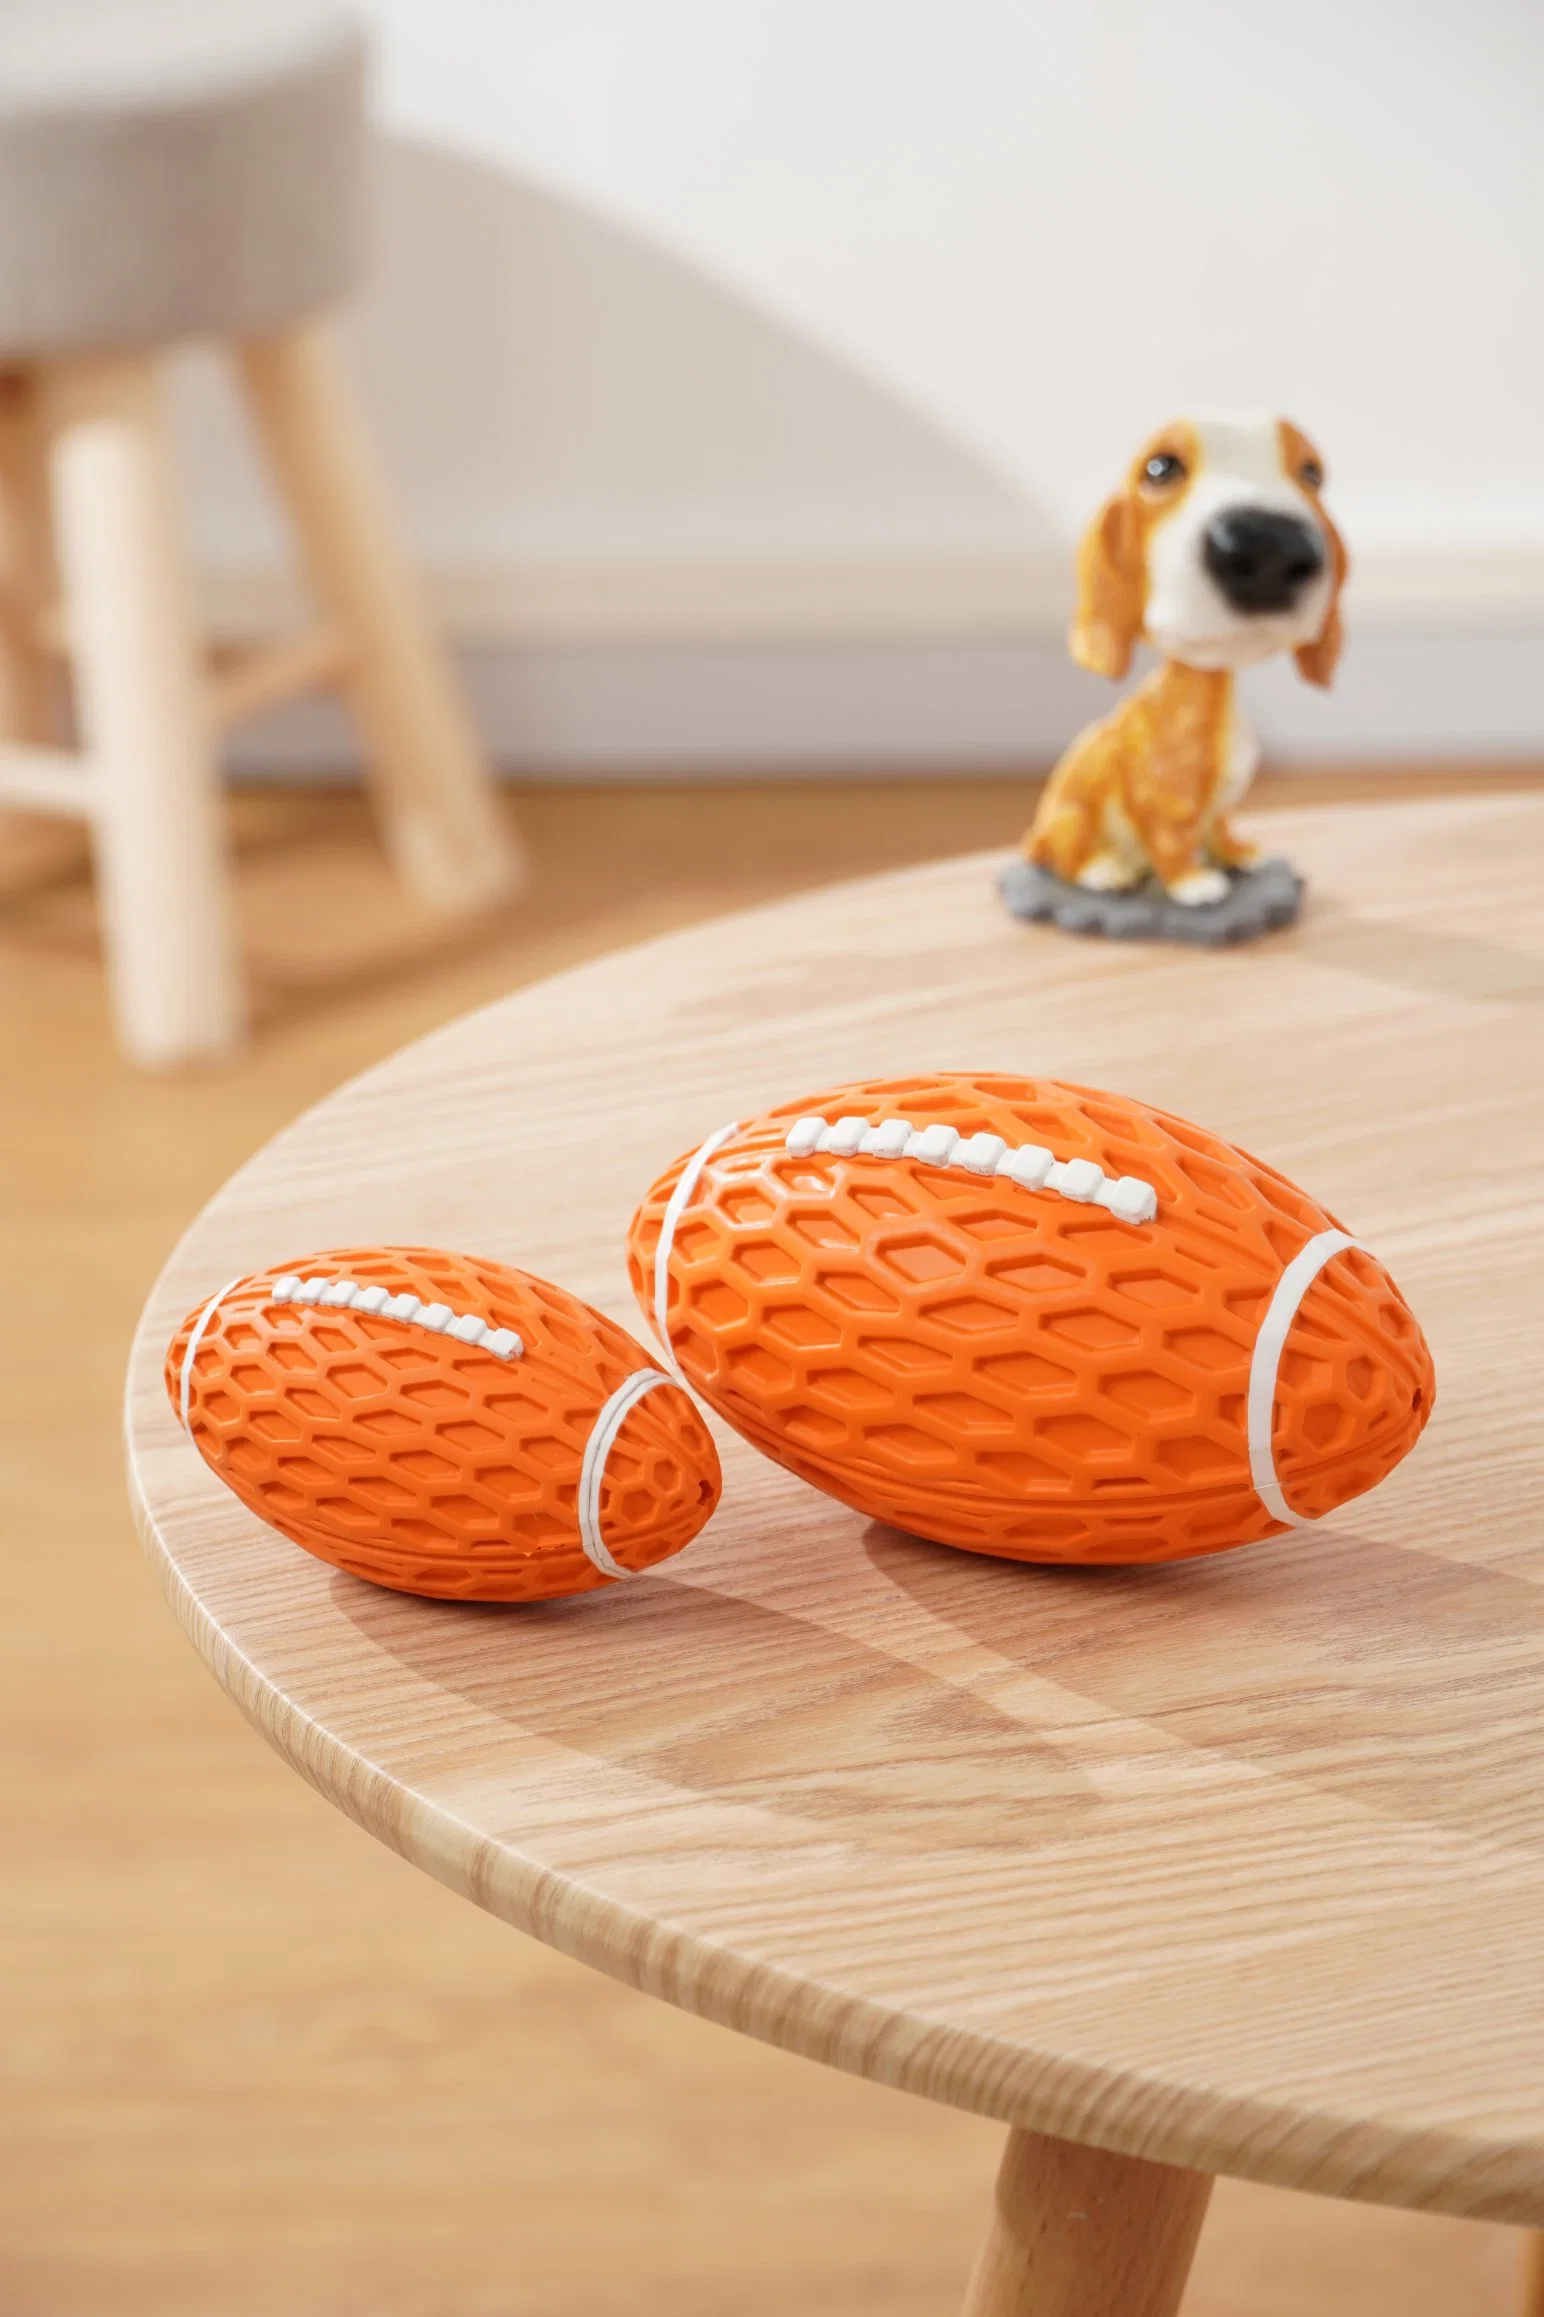 Juguete de perro de goma con forma de balón de rugby que hace ruido al apretarlo